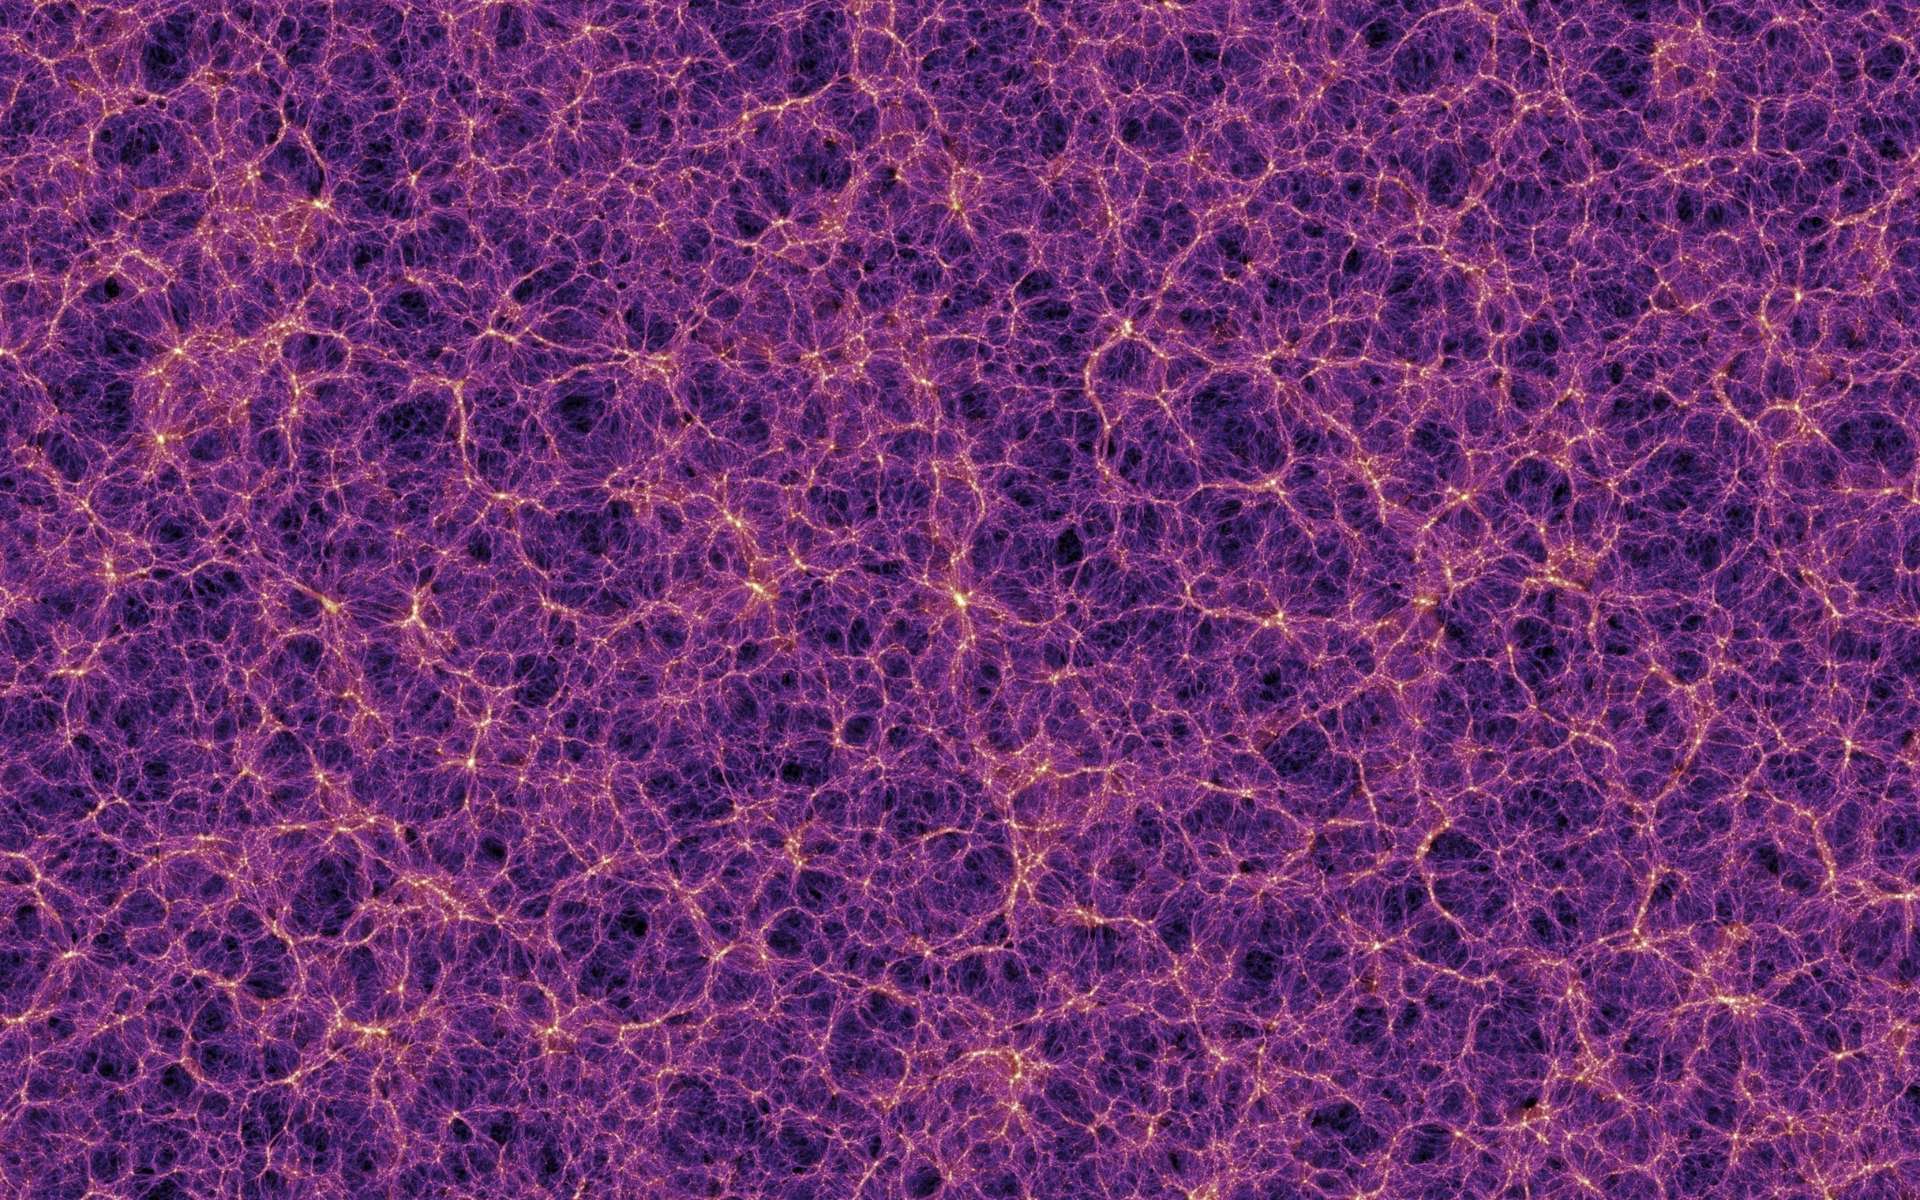 Carte de la matière noire. © V. Springel et al., MPA Garching, The Millenium Simulation